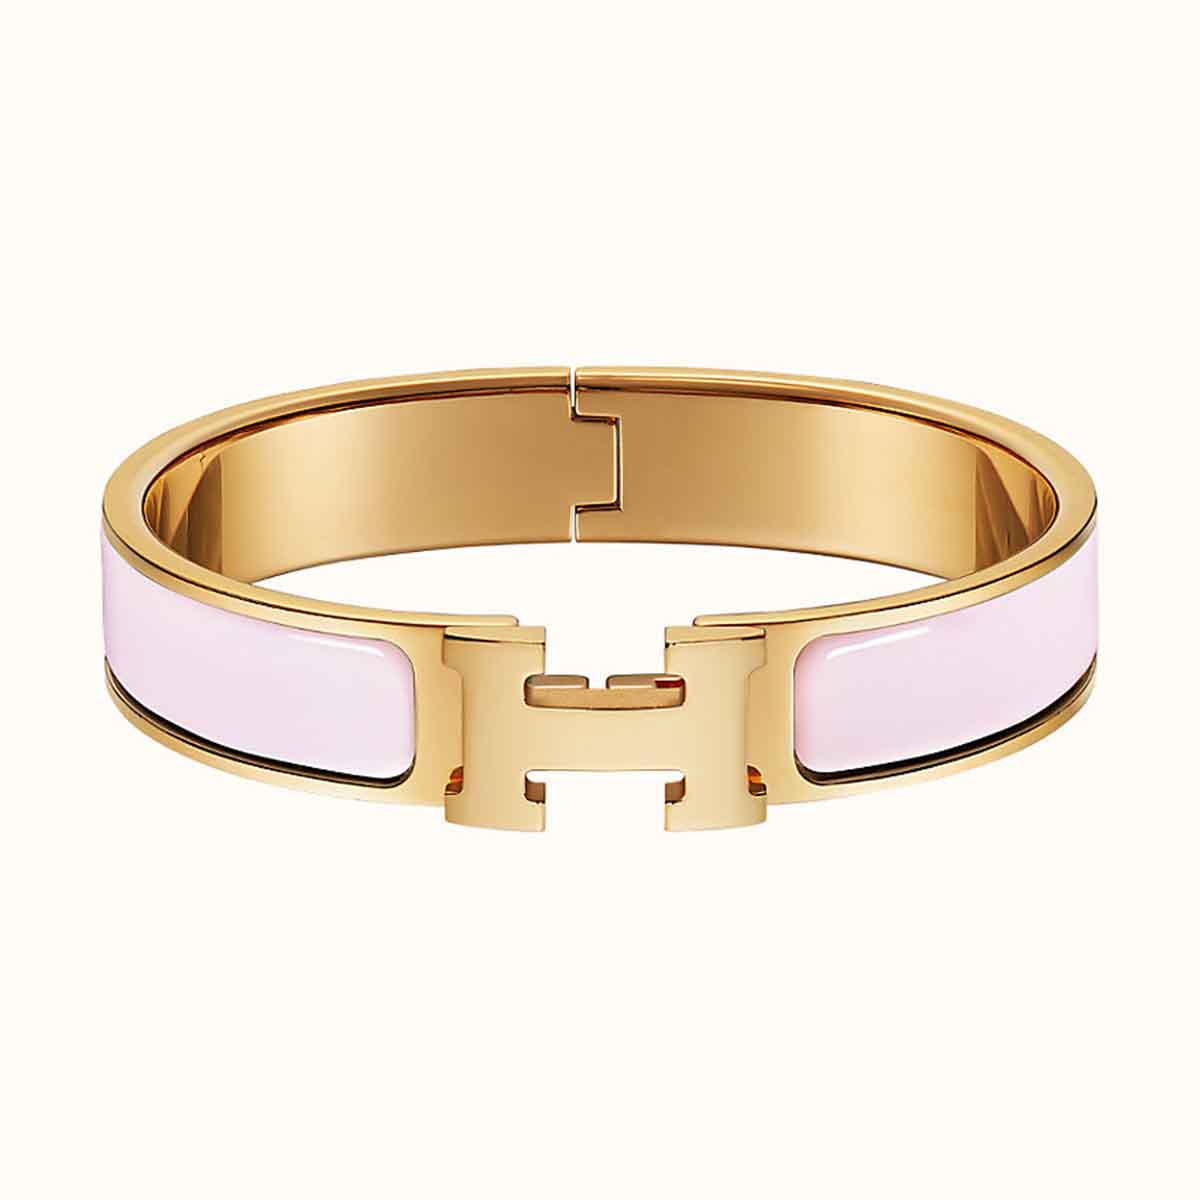 Hermes Stainless Steel Gold White Openable Cuff Kada Bracelet For Men